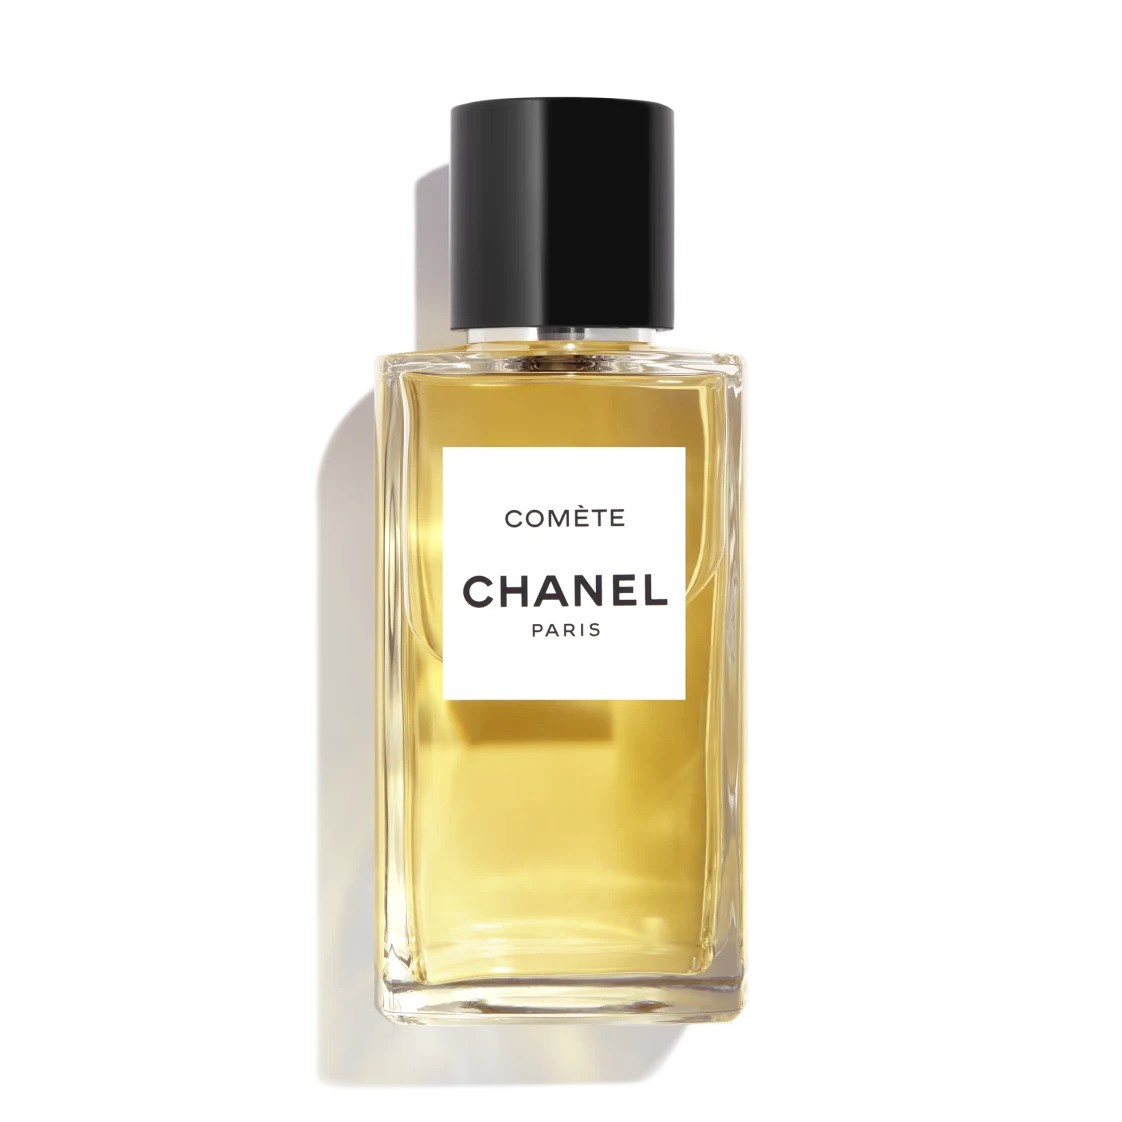 Chanel Comete fragrance